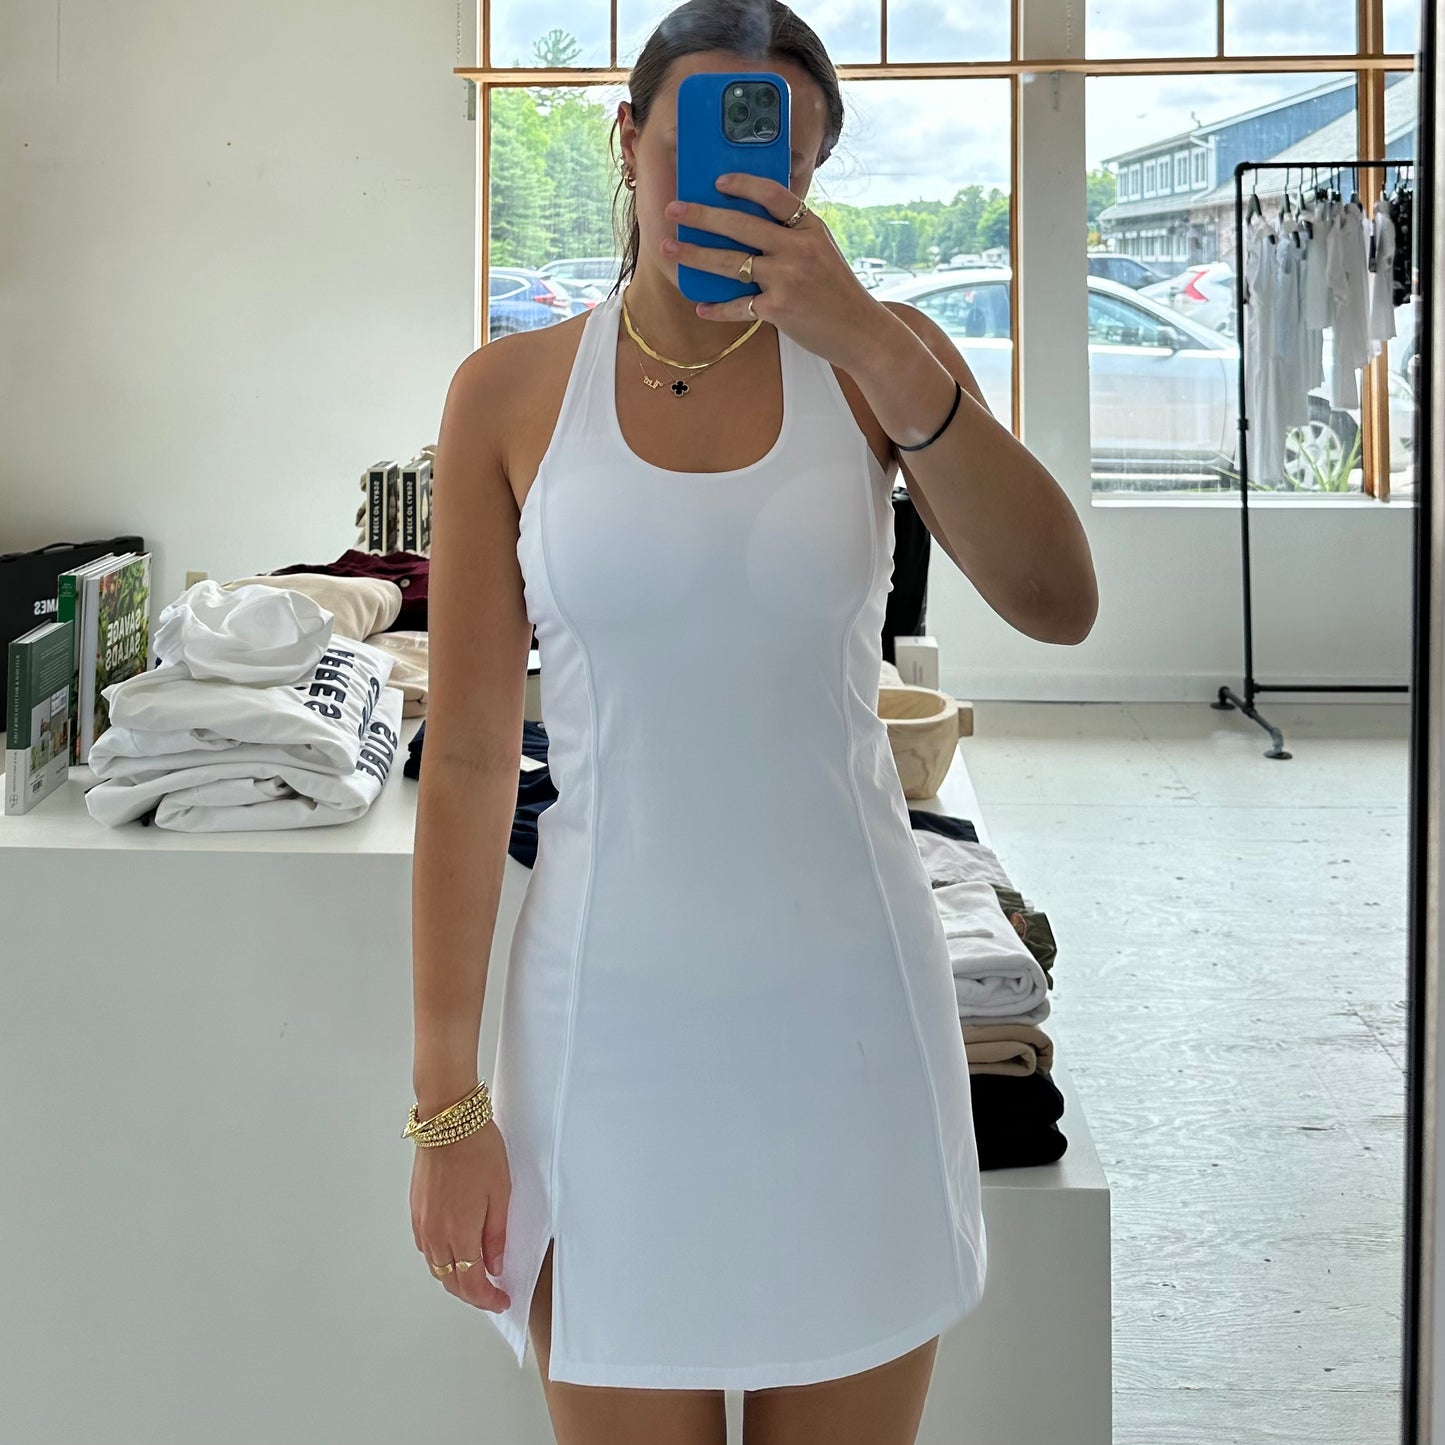 Tennis Dress